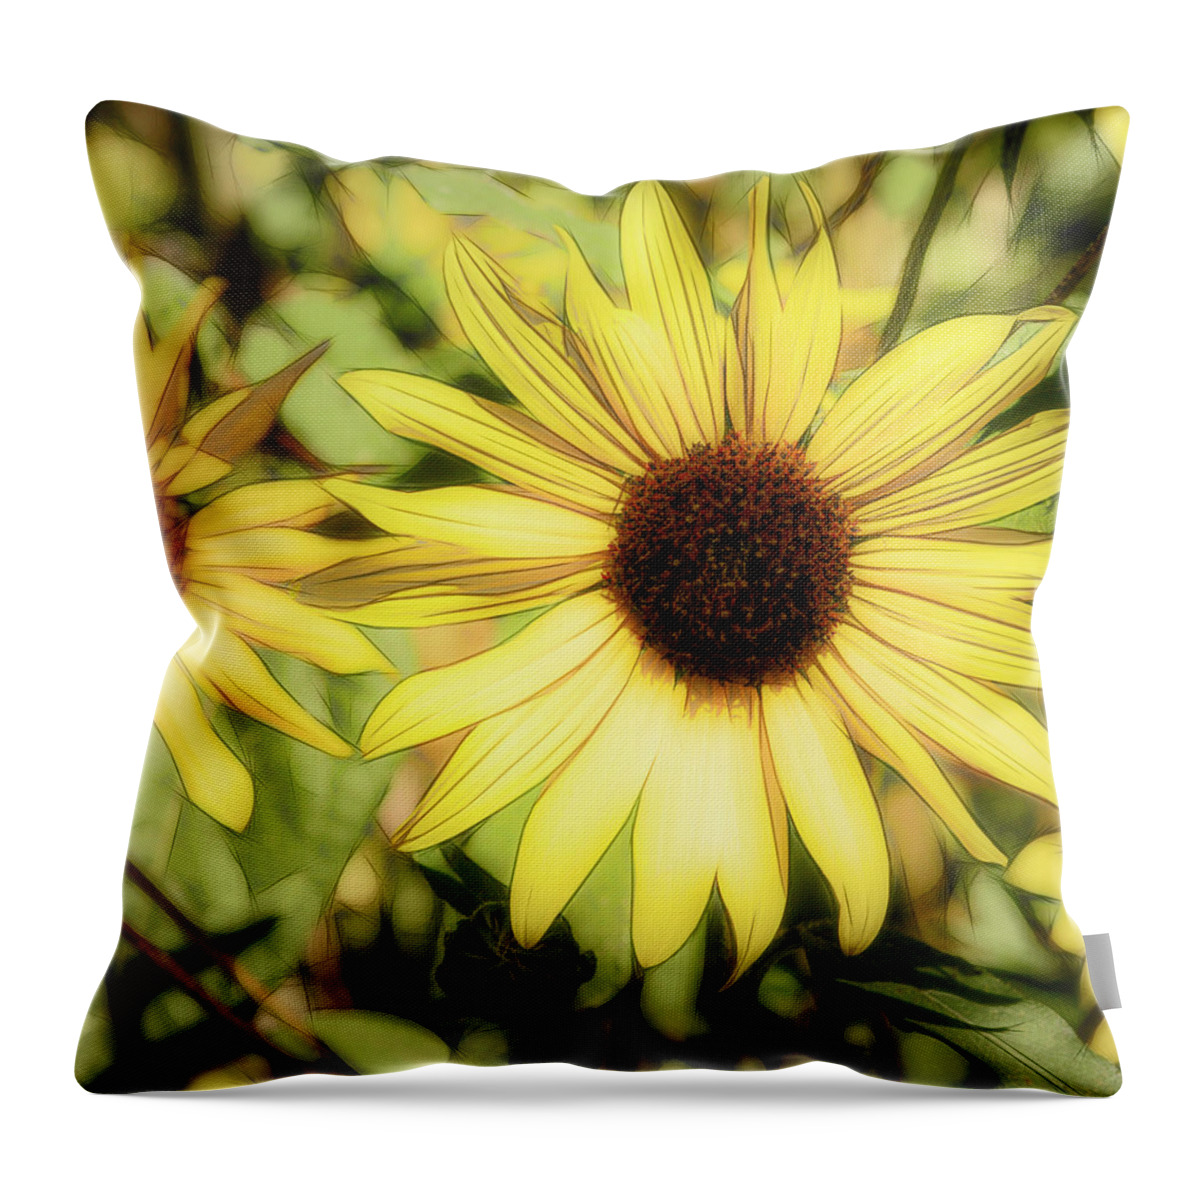 Desert Forest Garden Throw Pillow featuring the digital art A Trace Of Sunlight by Becky Titus